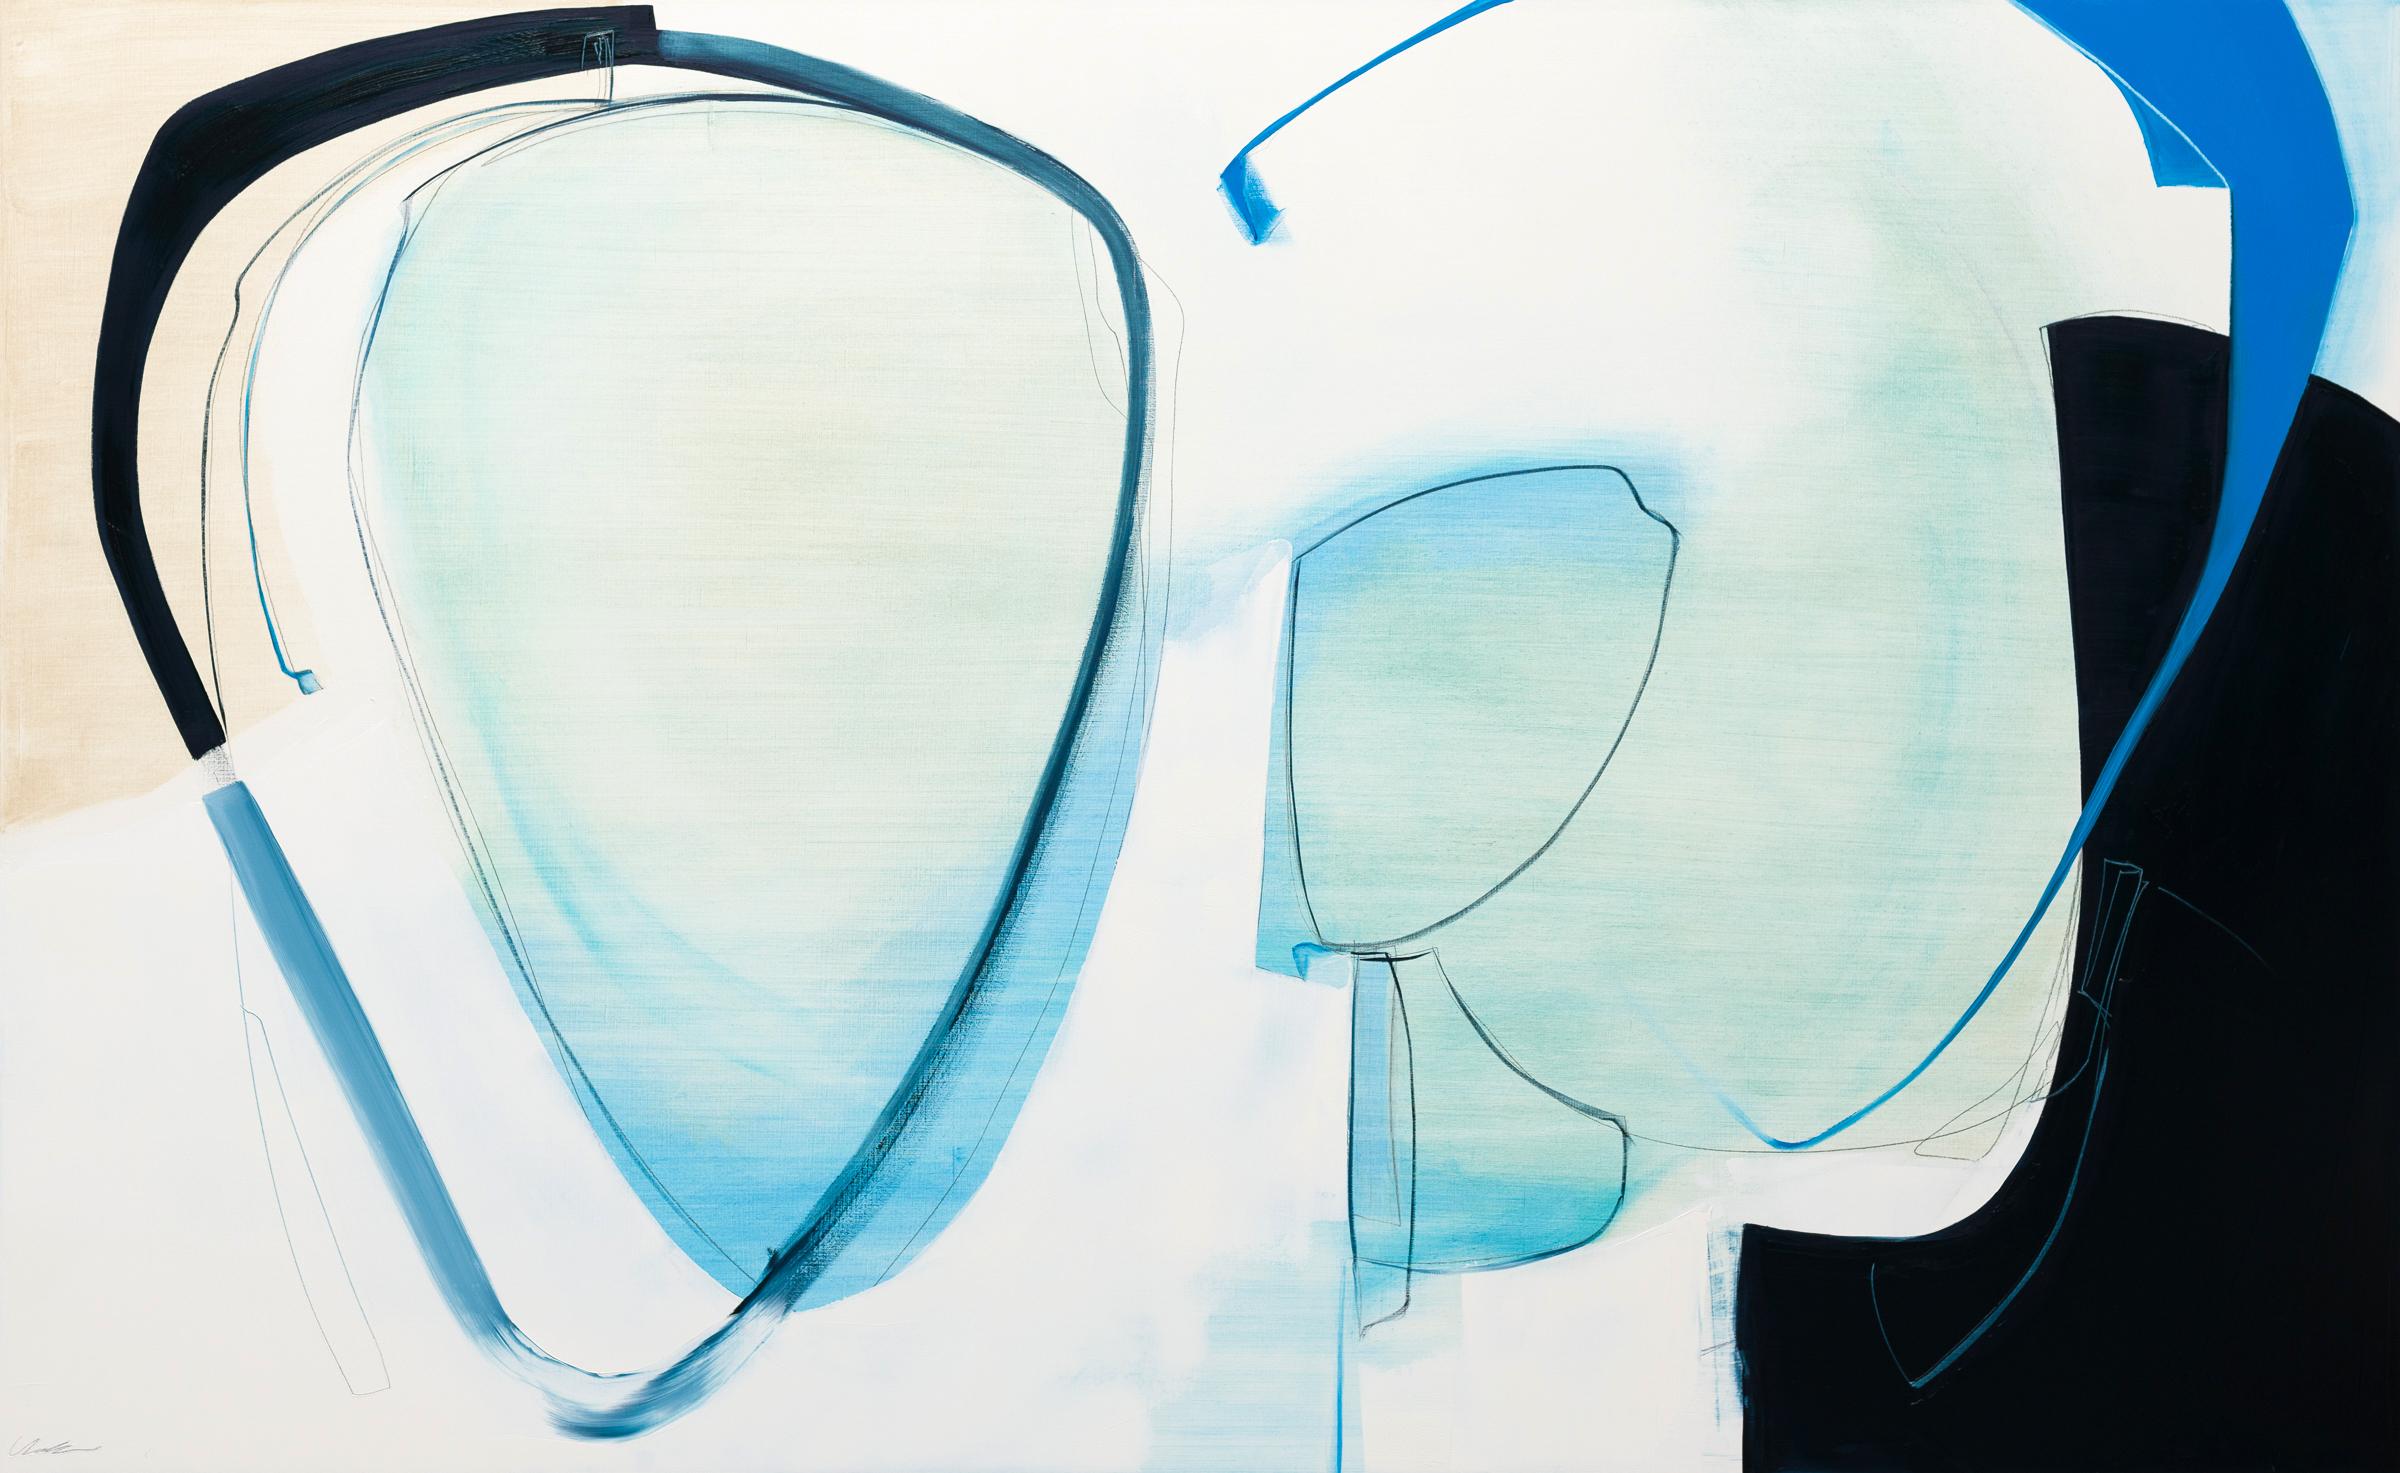 Abstract Painting Rose Umerlik - Echo,  Abstrait, huile, graphite, panneau de bois, bleu, noir, blanc